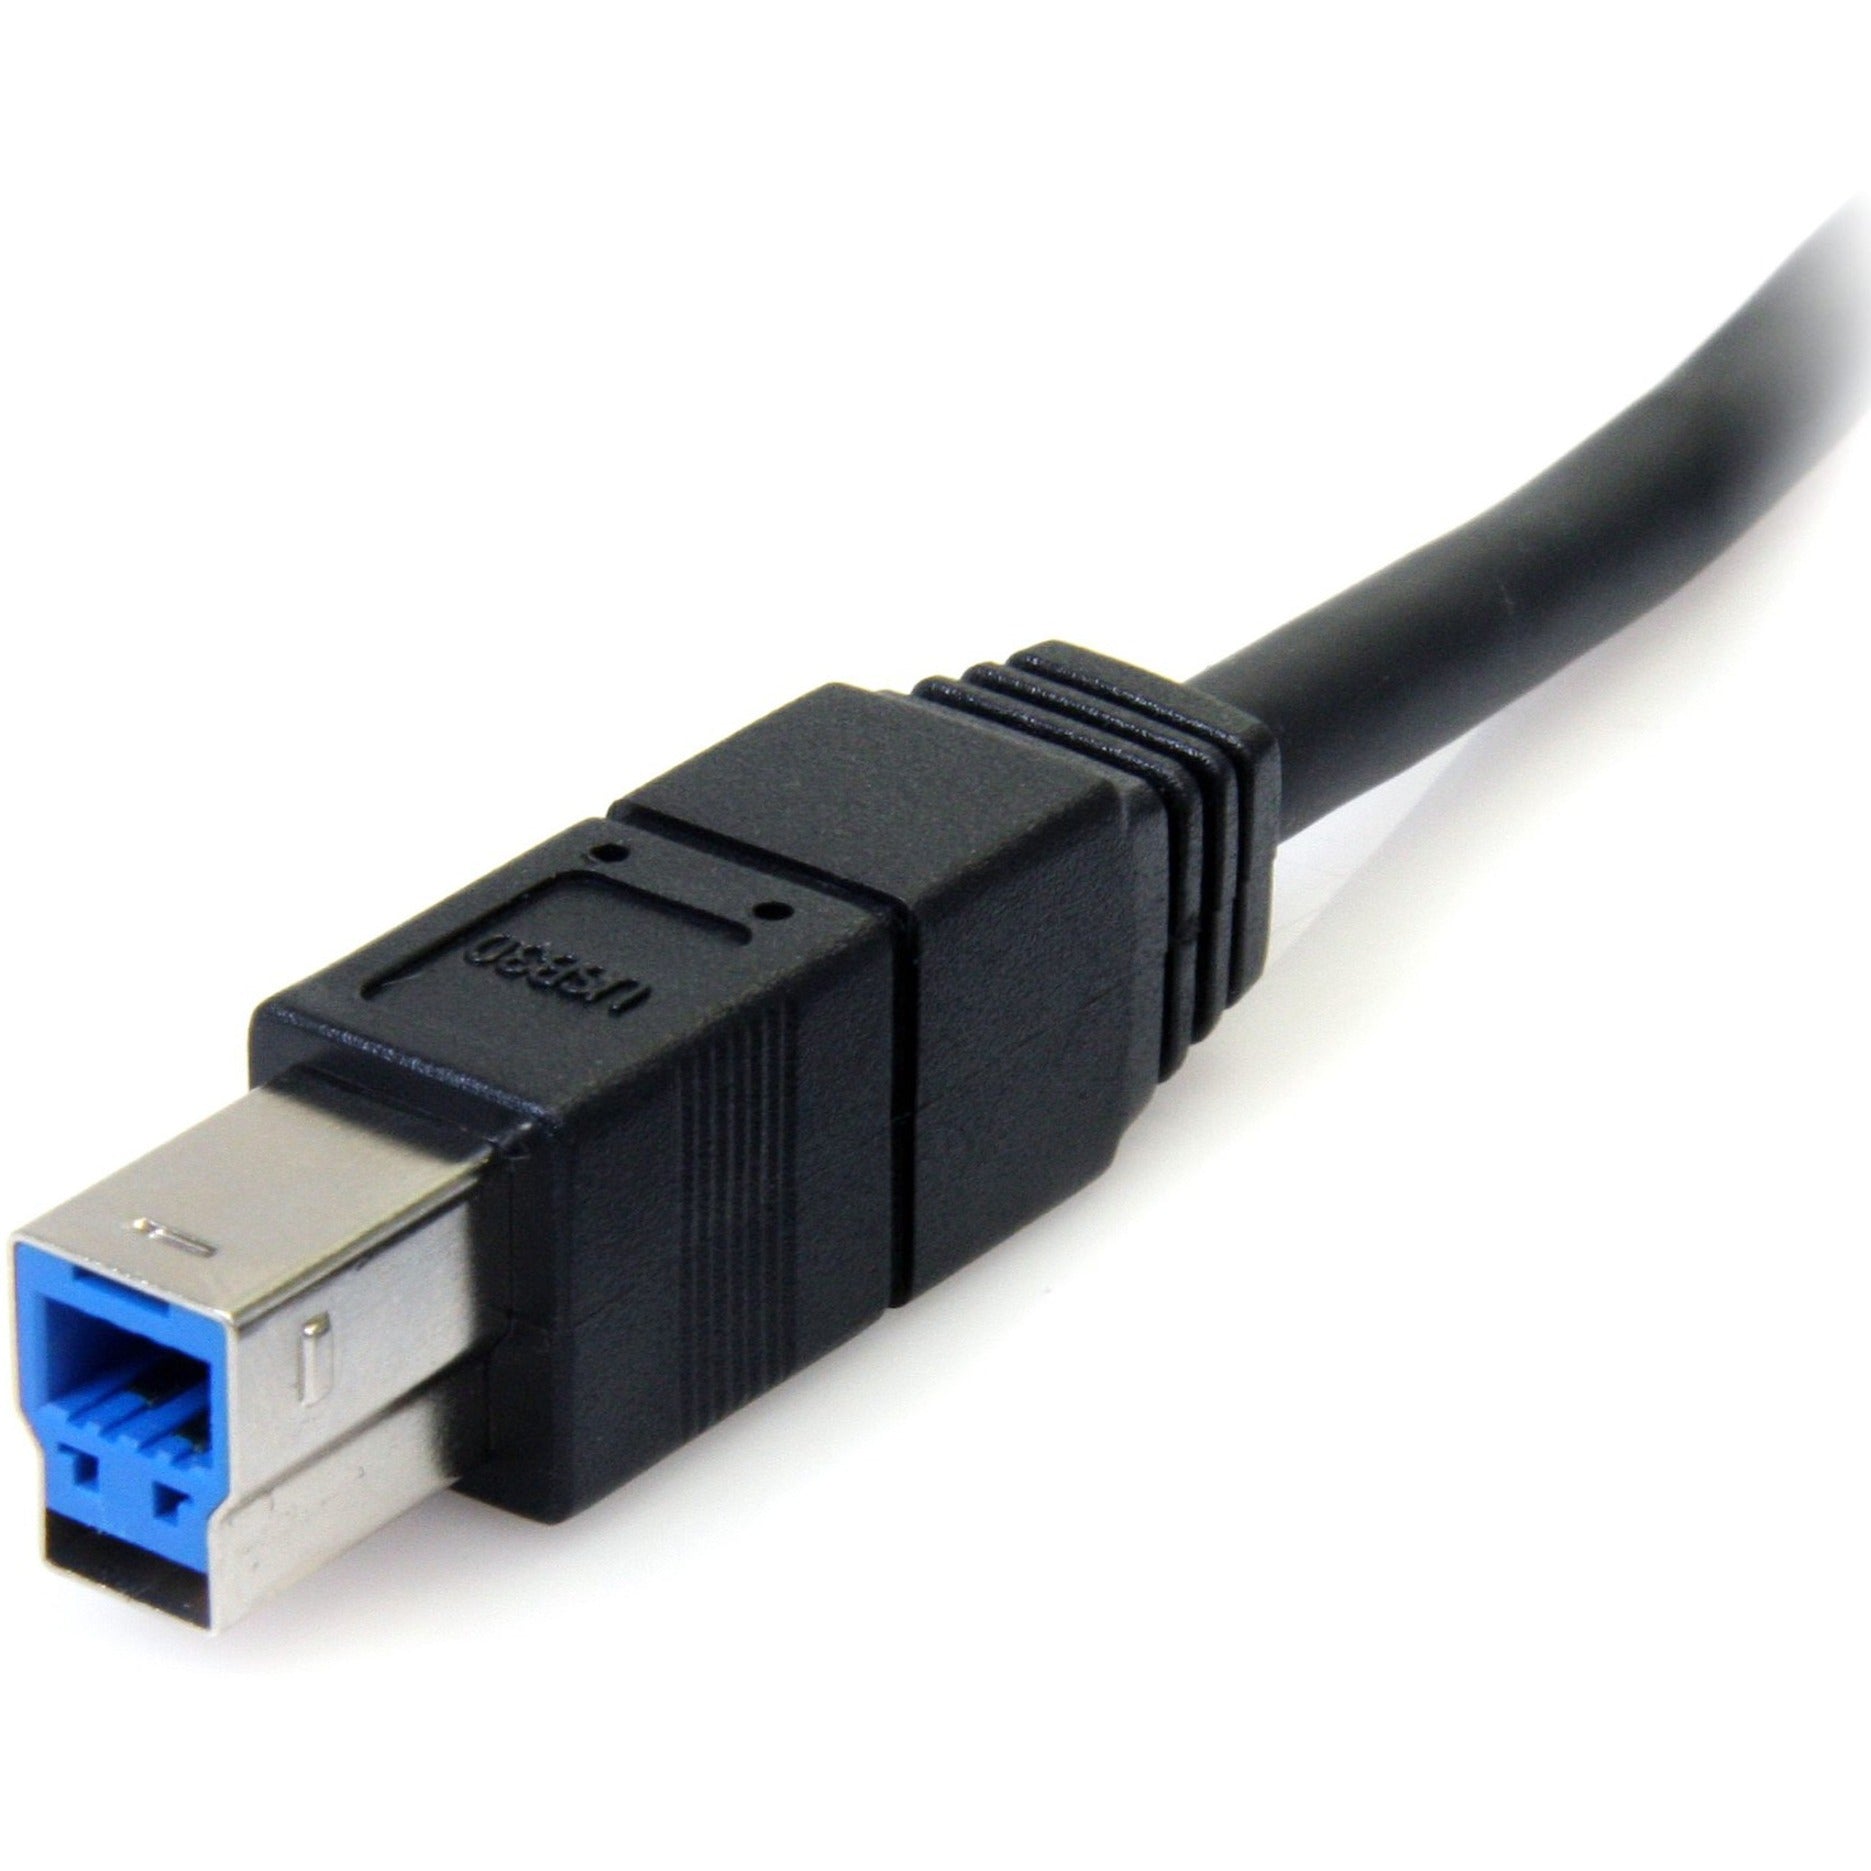 明星科技。康明 USB3SAB6BK 6英尺 黑色 超高速 USB 3.0 电缆 A 到 B - 男/男，高速数据传输，终身保修。